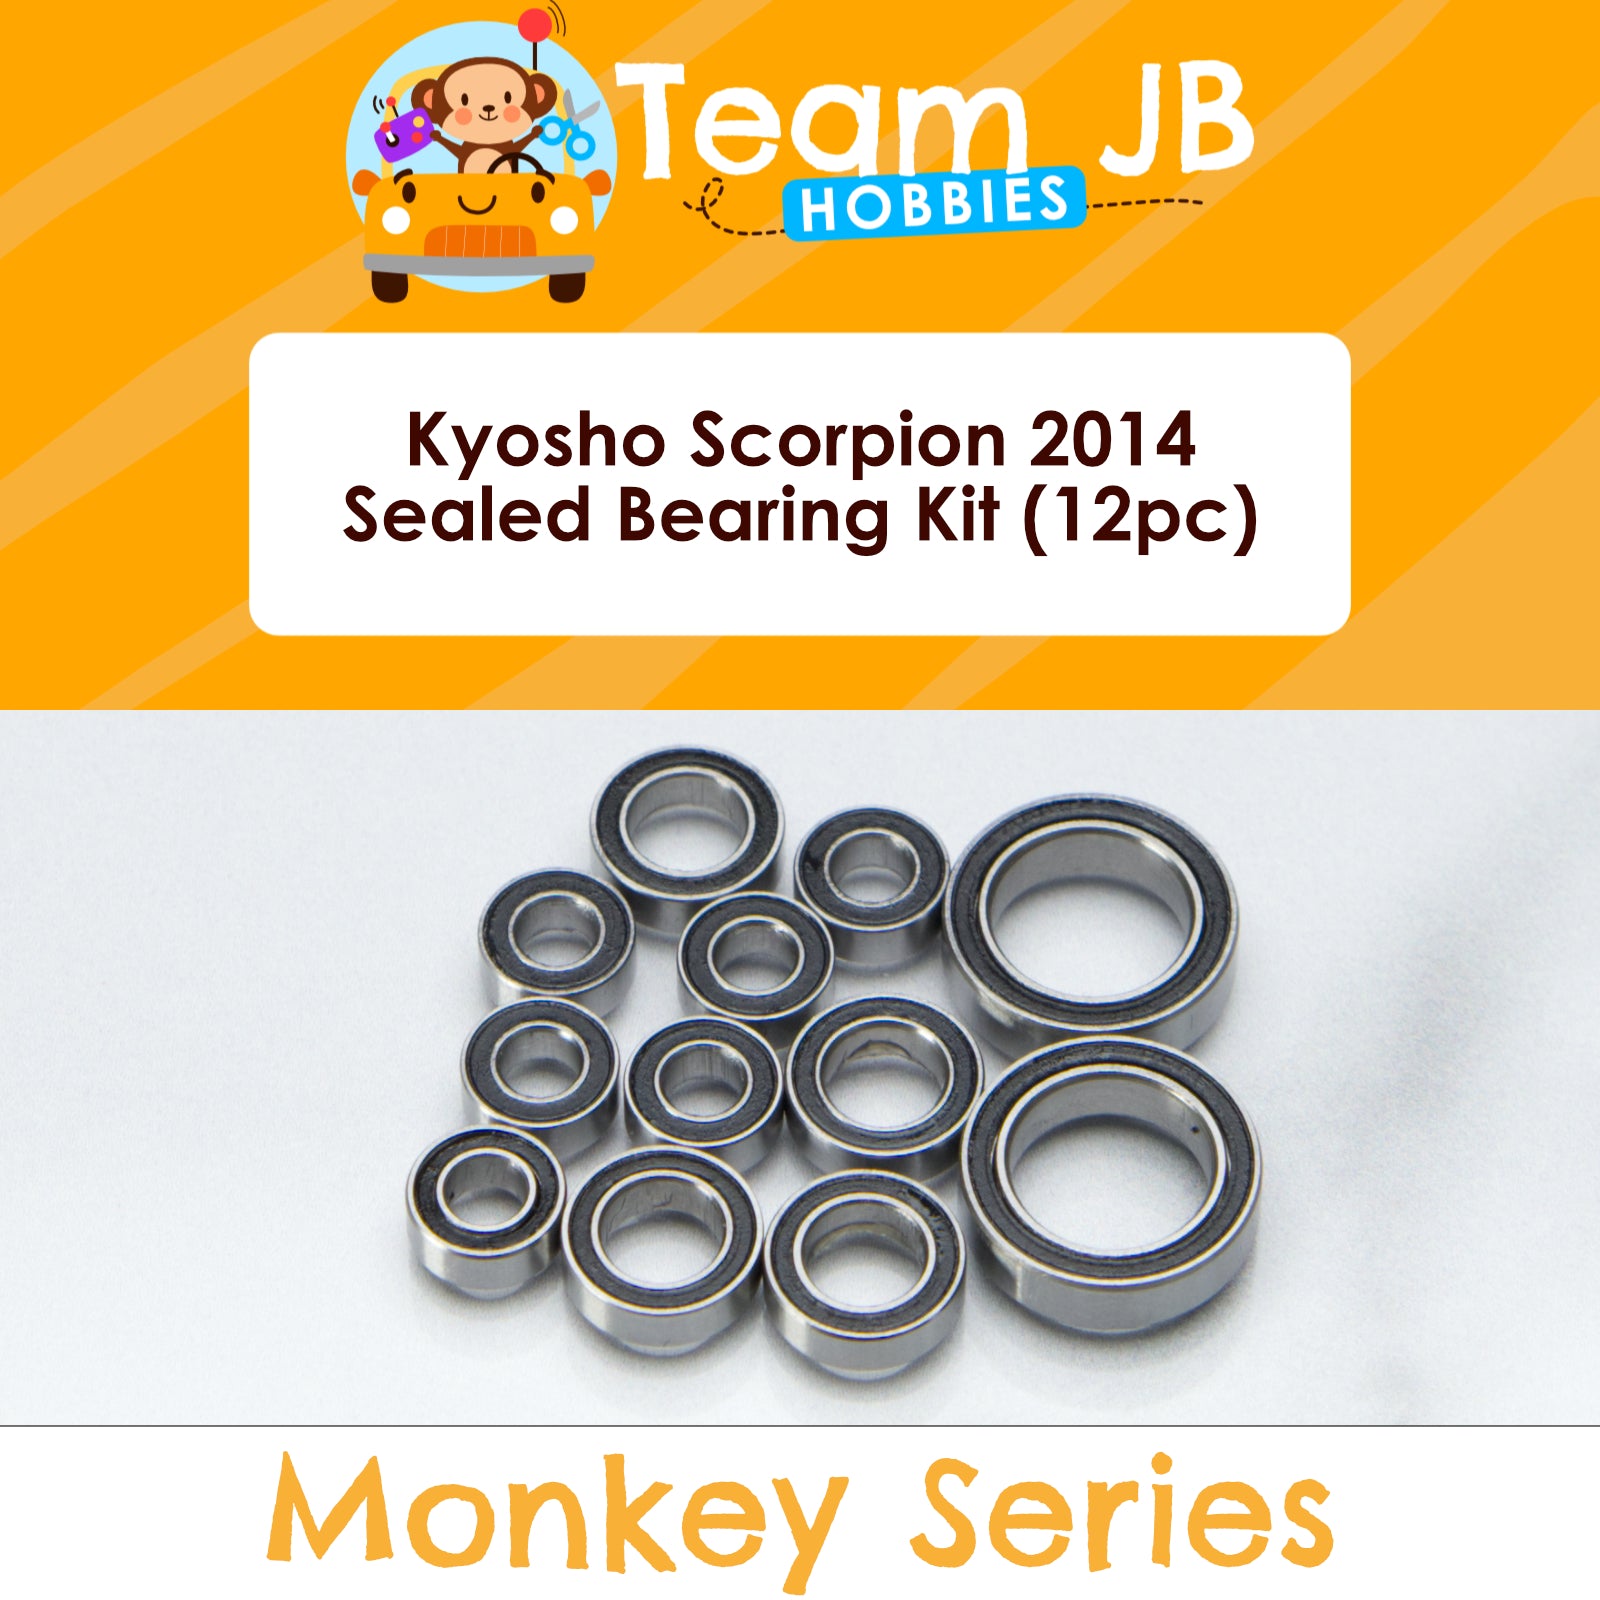 Kyosho Scorpion 2014 - Sealed Bearing Kit